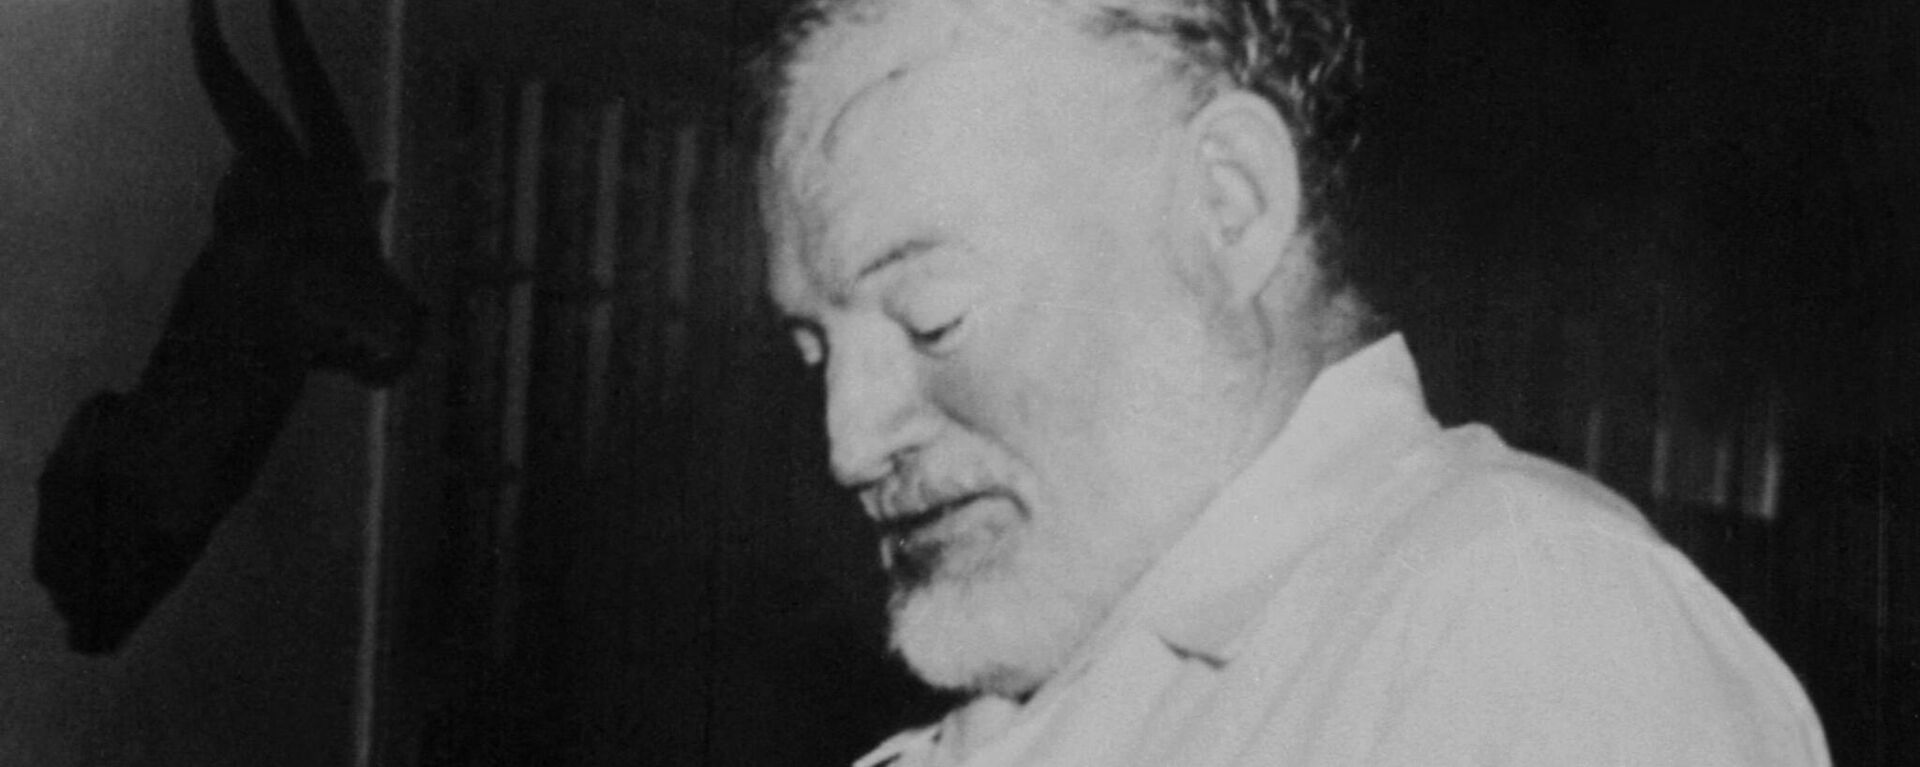 Ernest Hemingway, escritor estadounidense - Sputnik Mundo, 1920, 02.04.2021